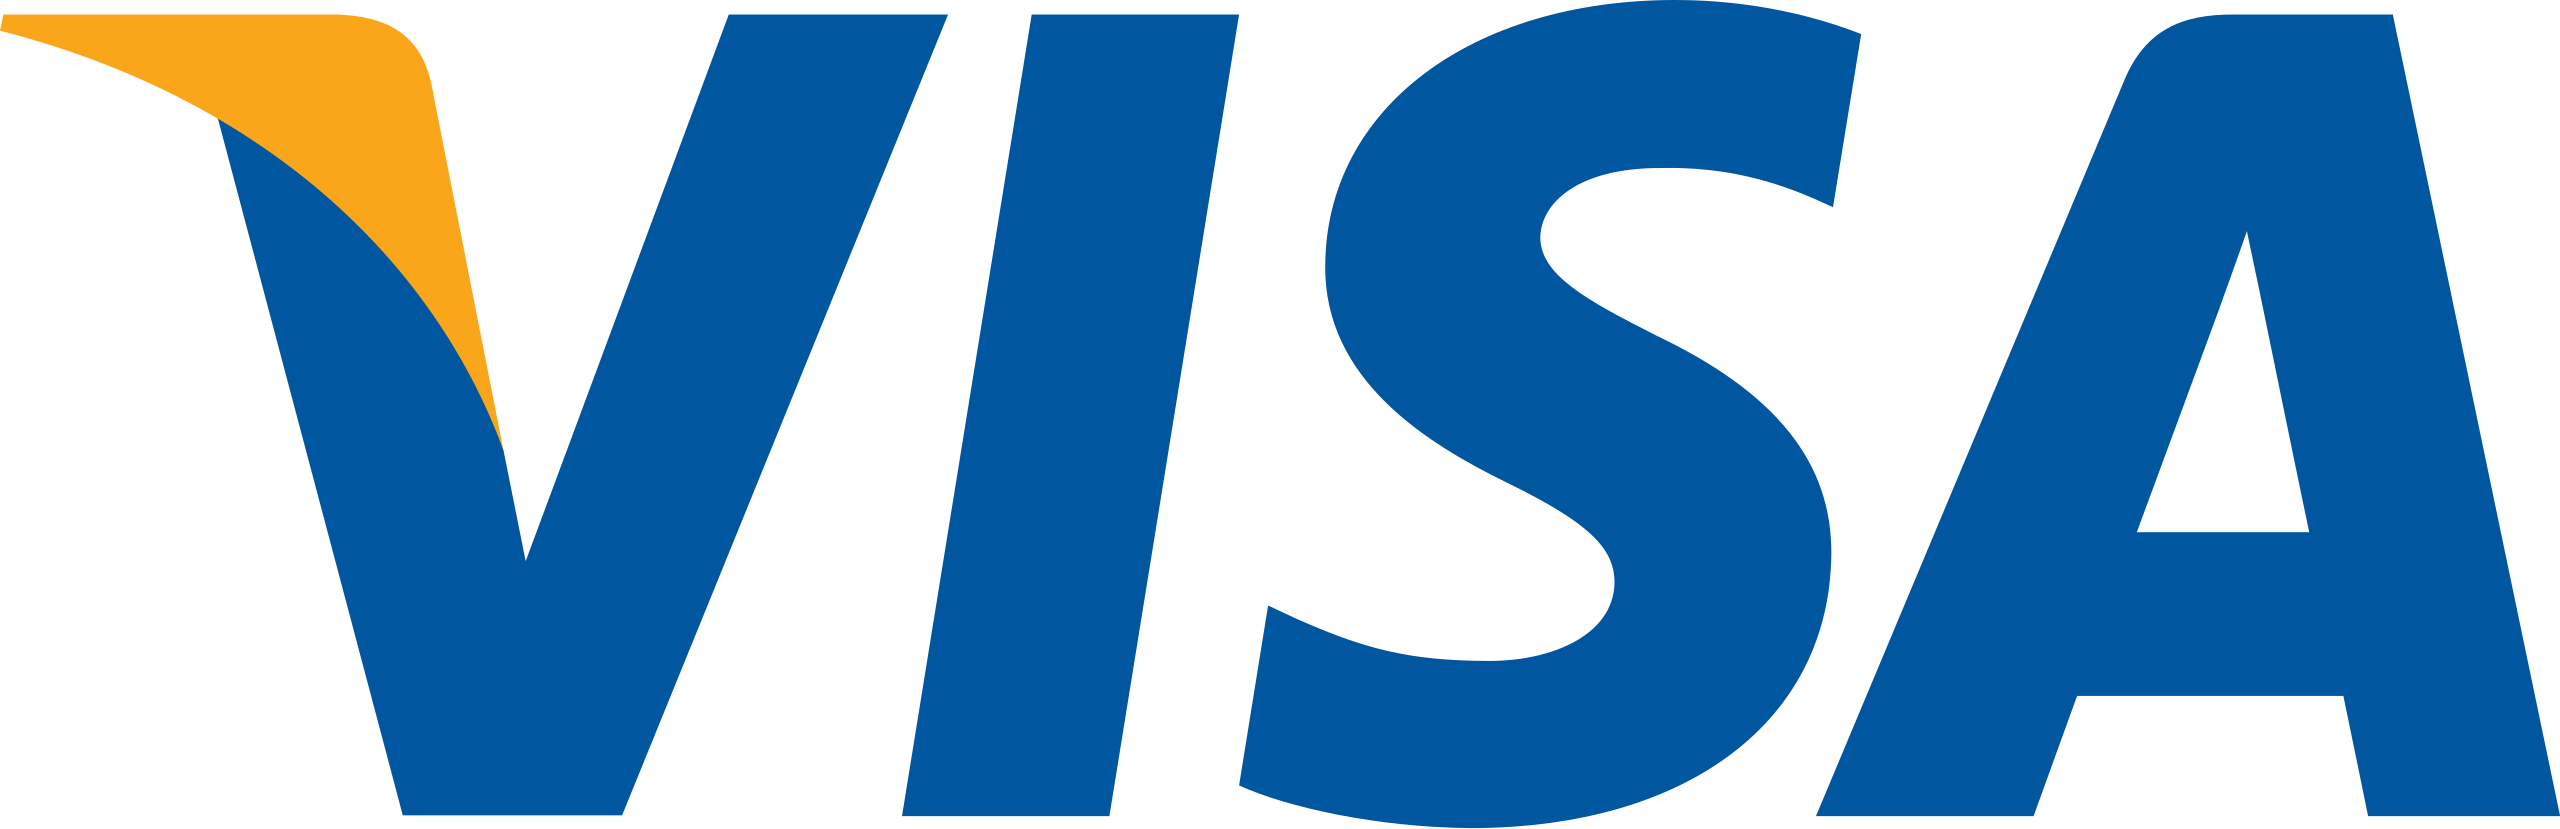 Visa_Inc__logo_svg